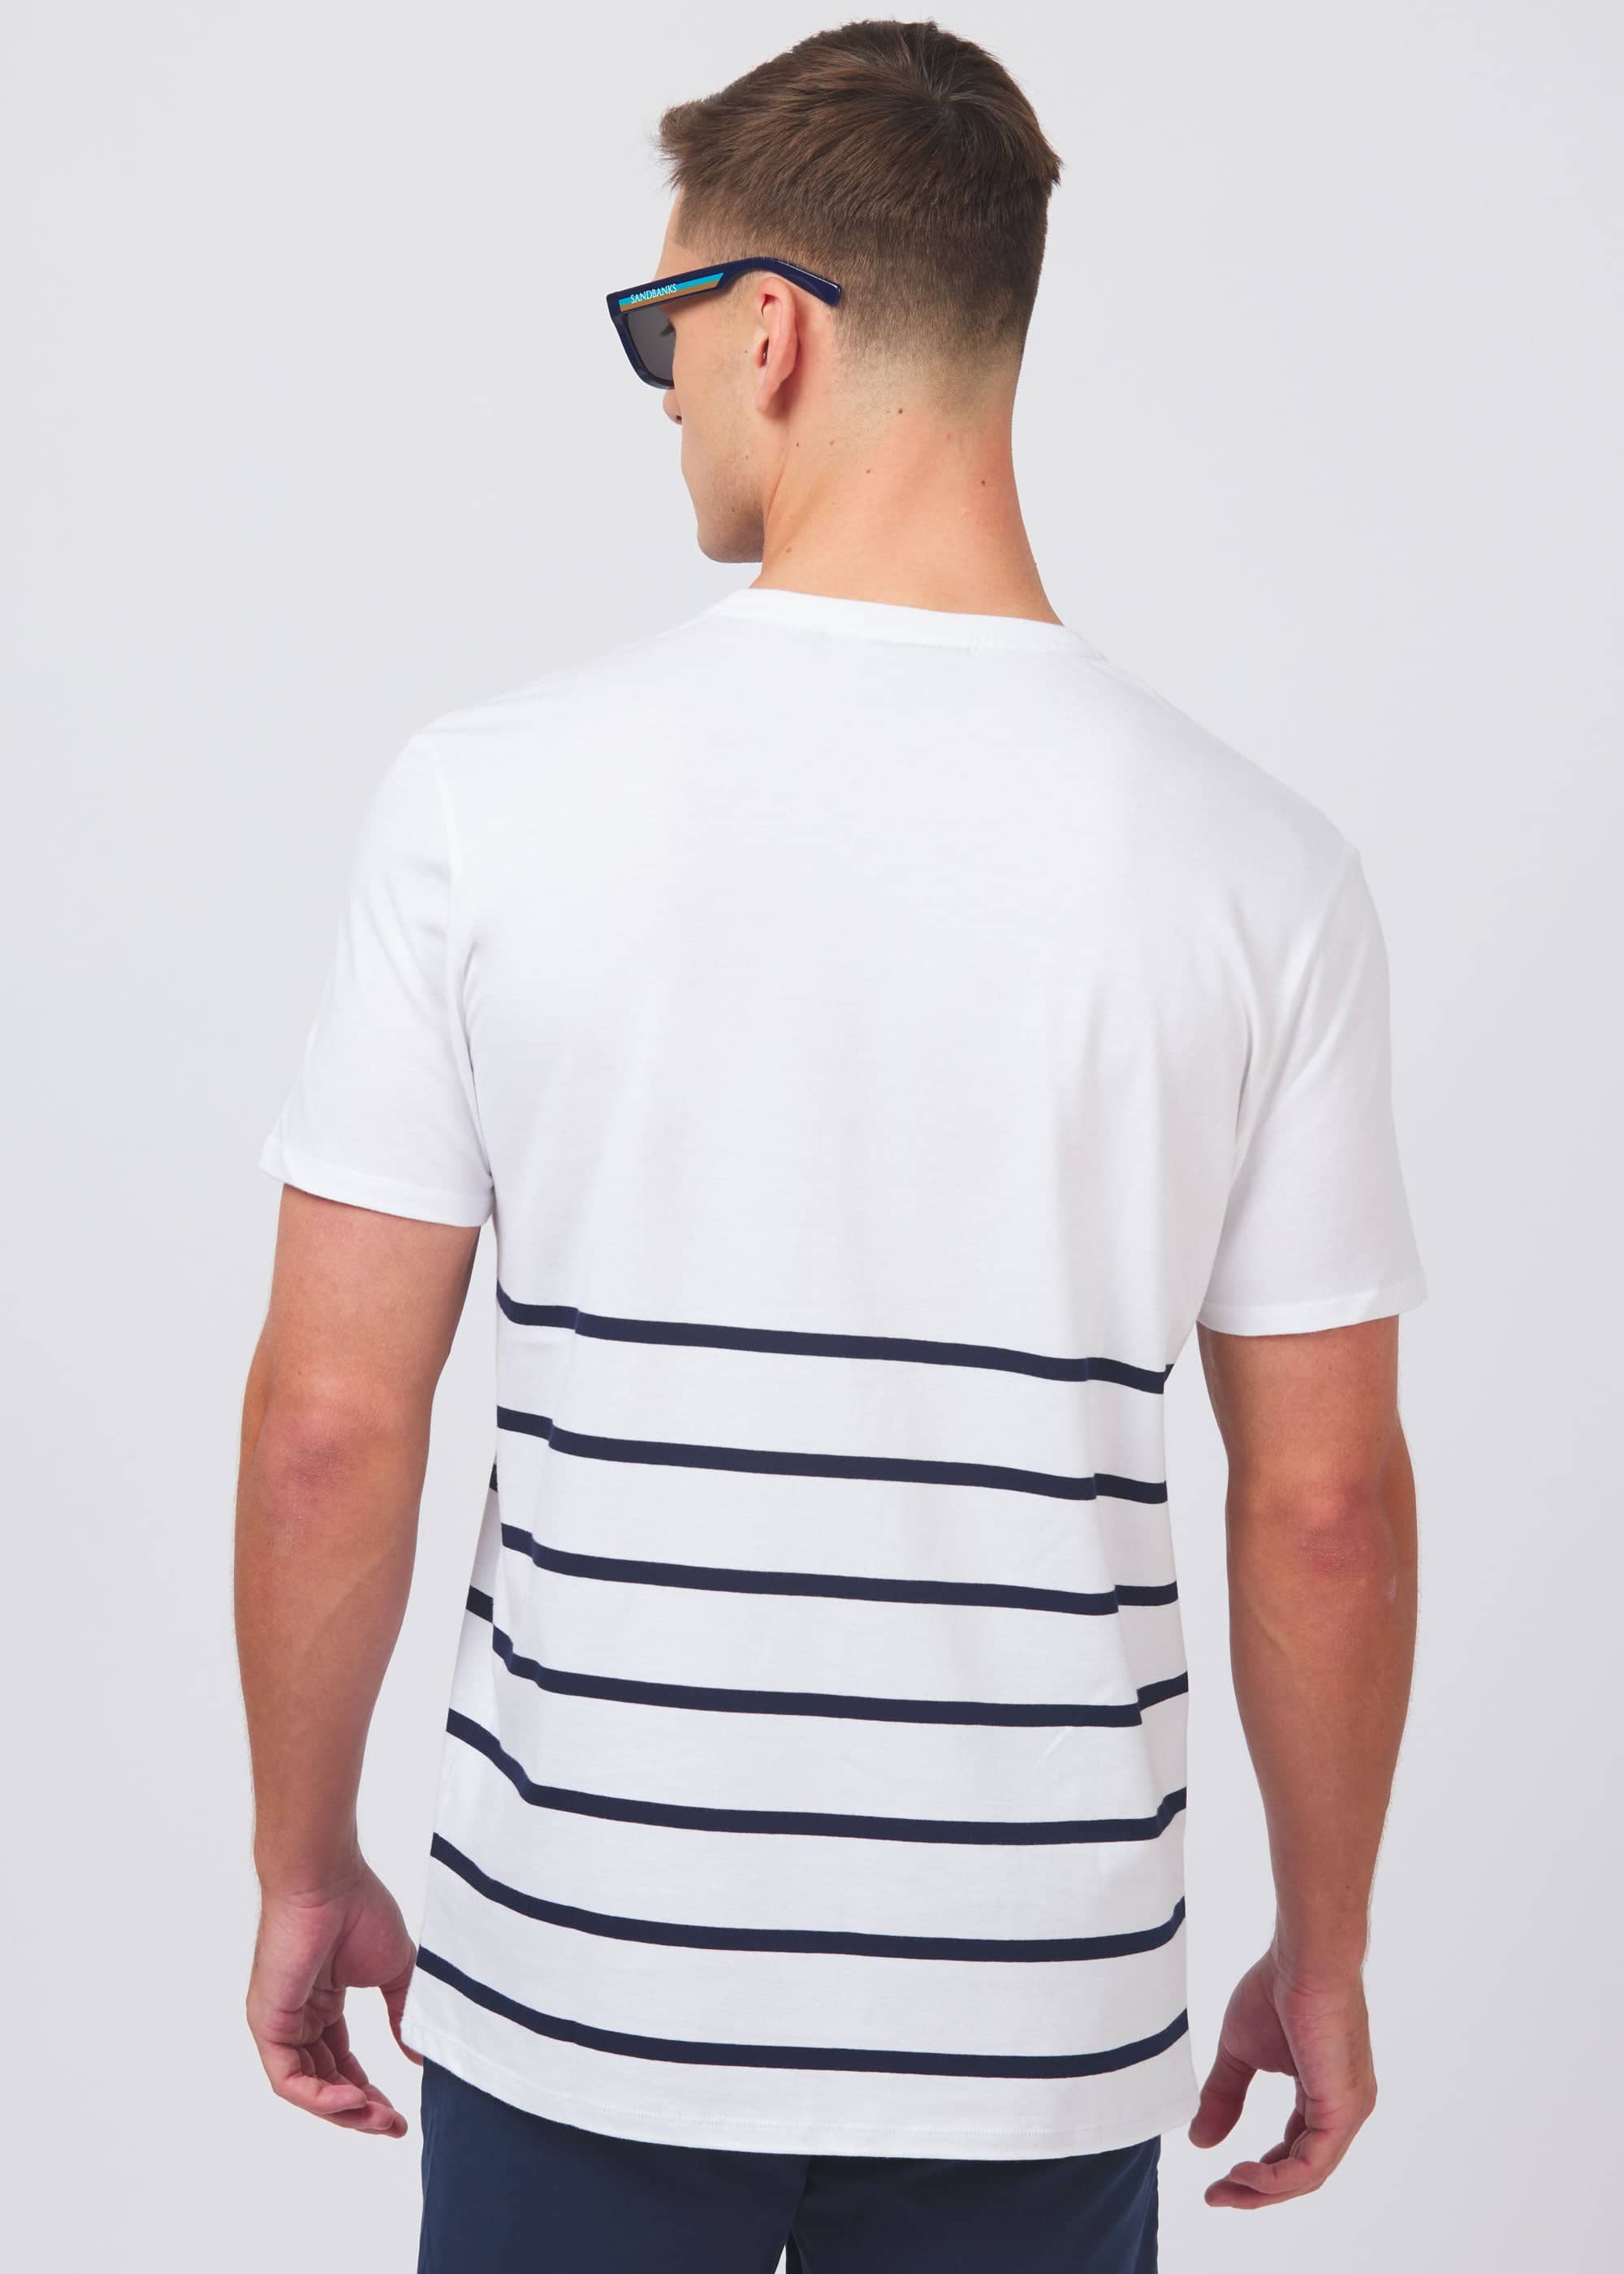 Sandbanks Maritime Stripe T-Shirt - White/Navy - Sandbanks